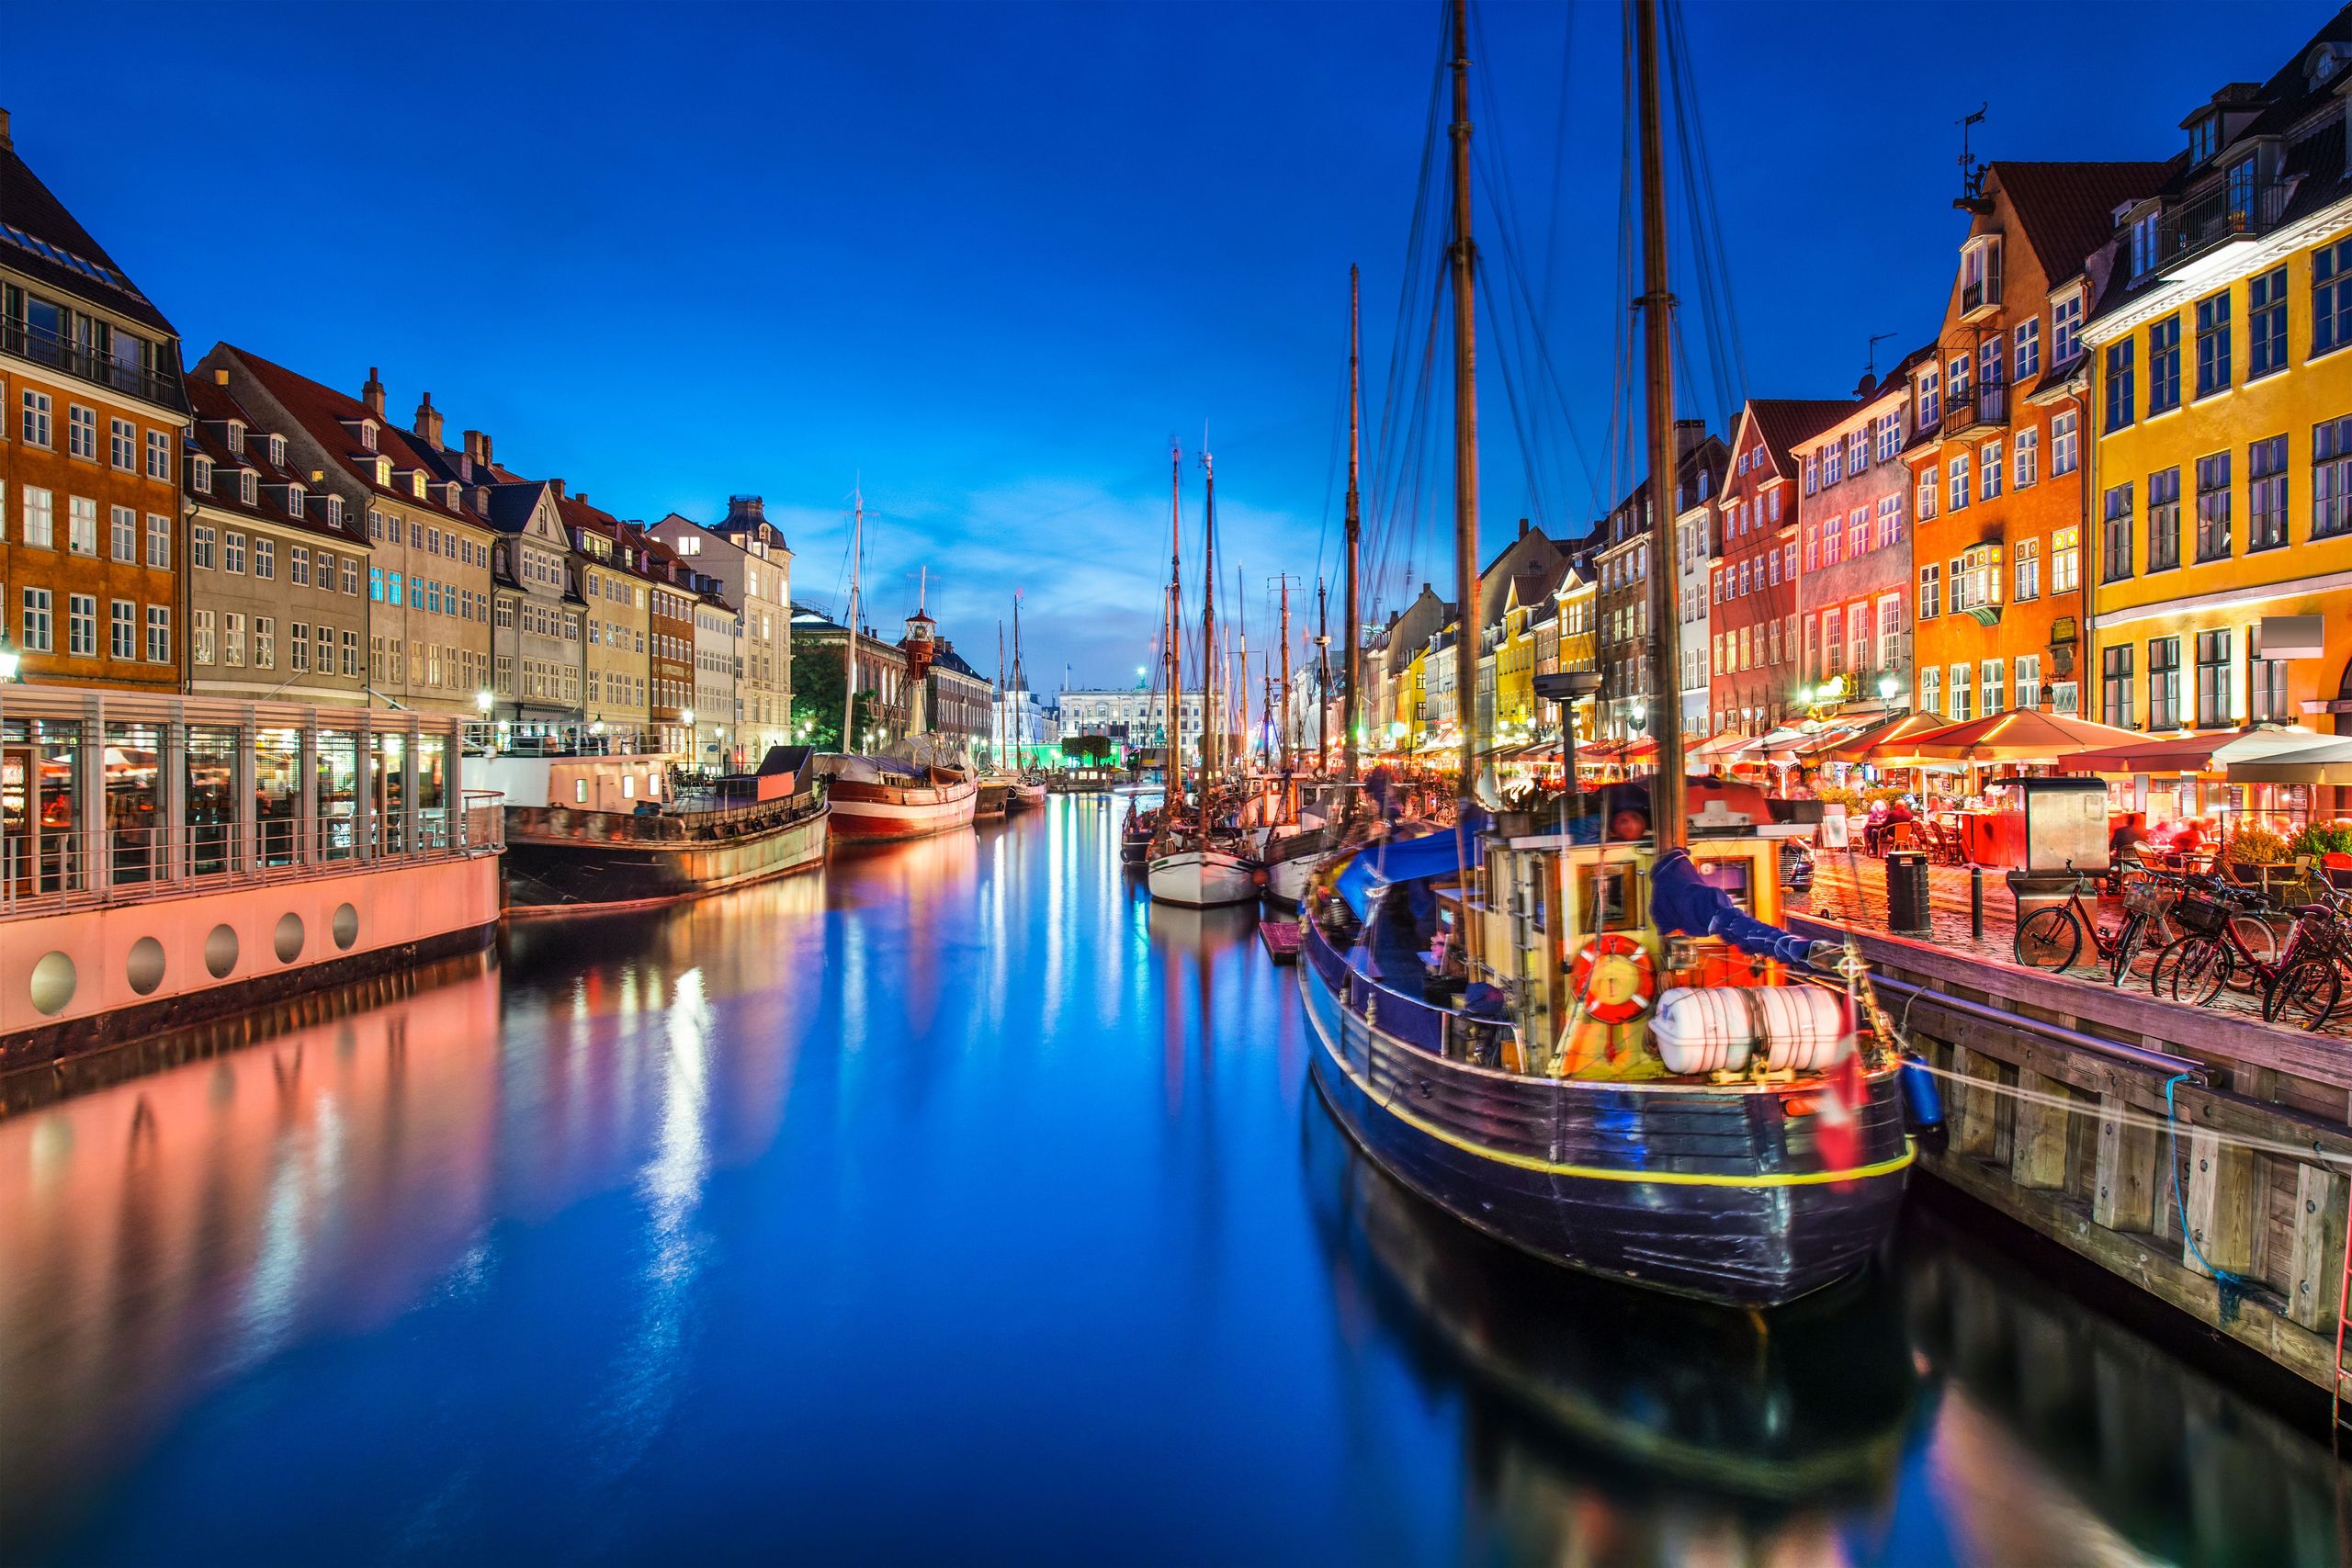 Harbor of Copenhagen by night